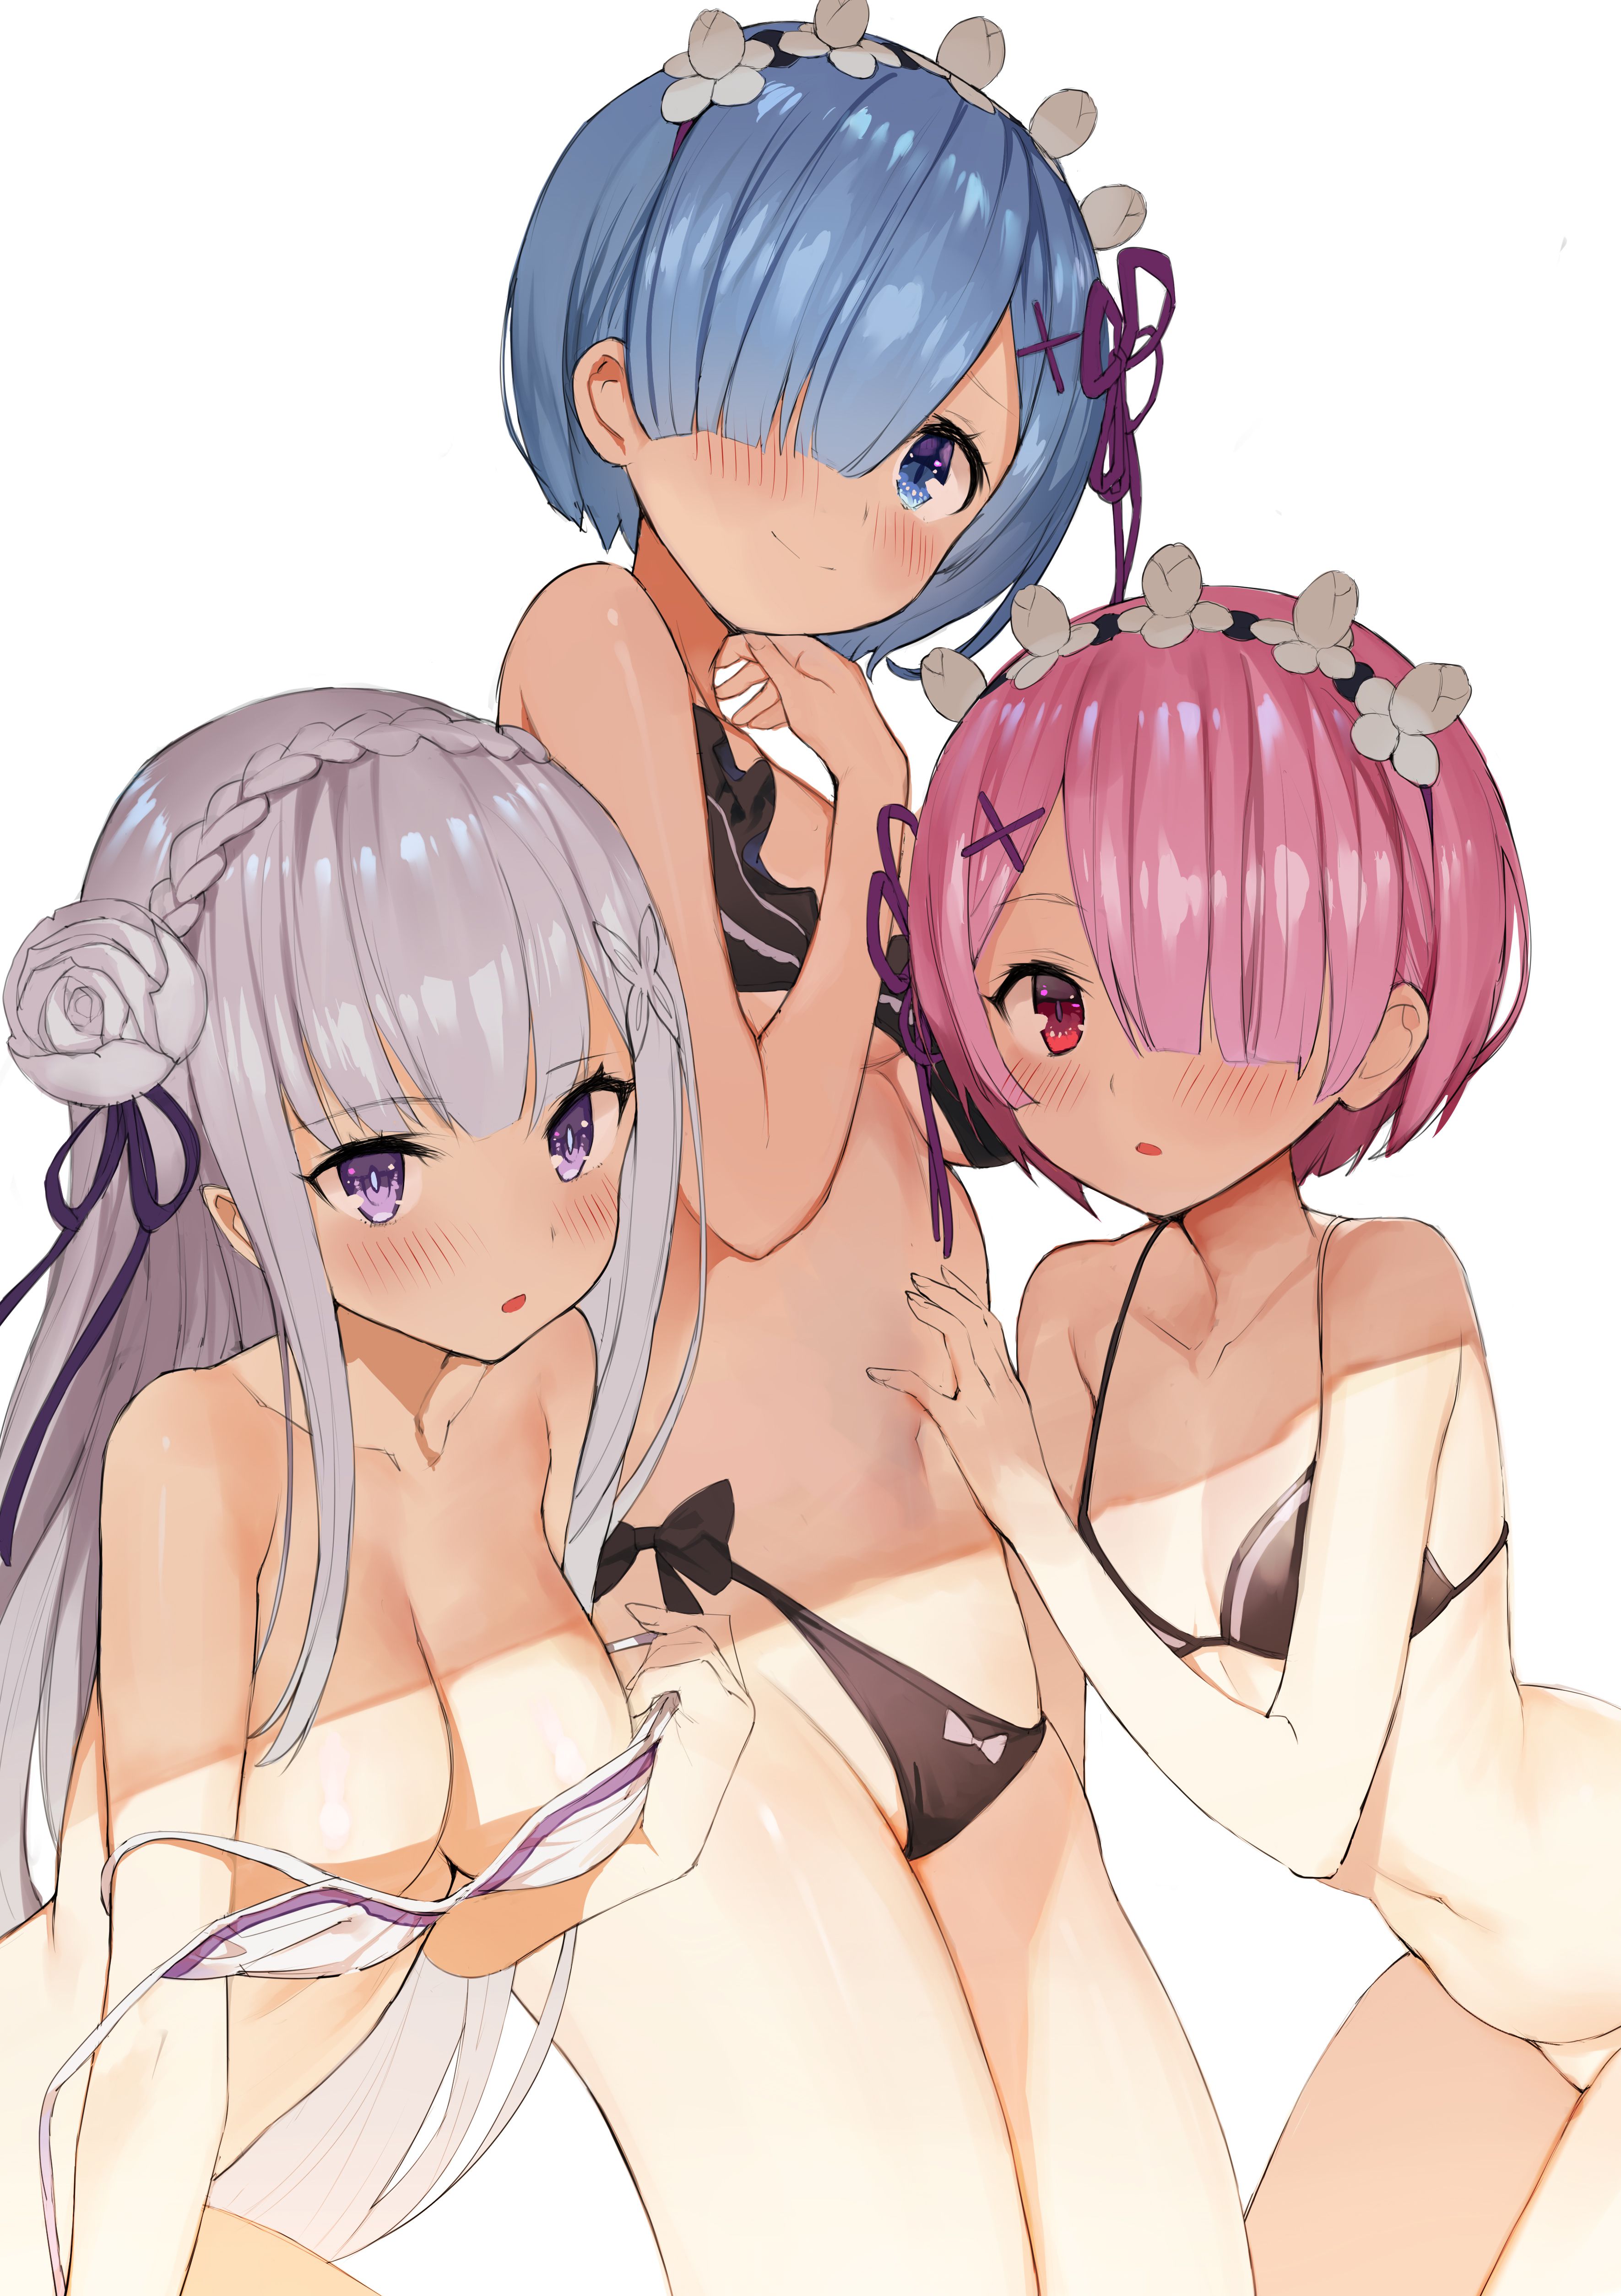 Rezero's Oni Kawaii Erotica Image Summary. vol.5 10